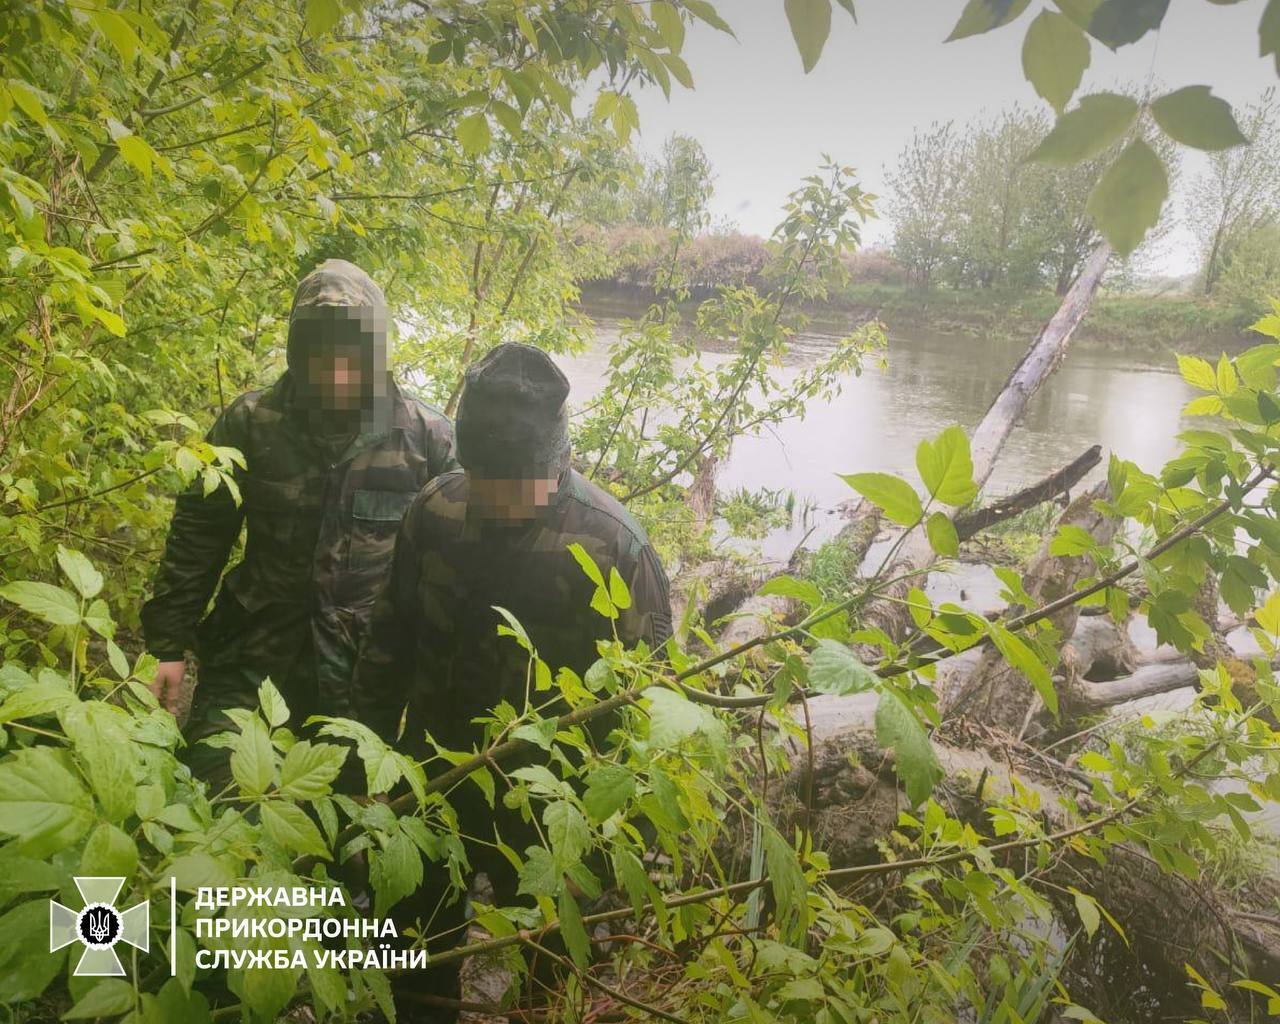 Не знайшли роботи в Німеччині: двоє чоловіків перепливли річку, аби повернутись в Україну. Фото  uqidrkiqxeidqant